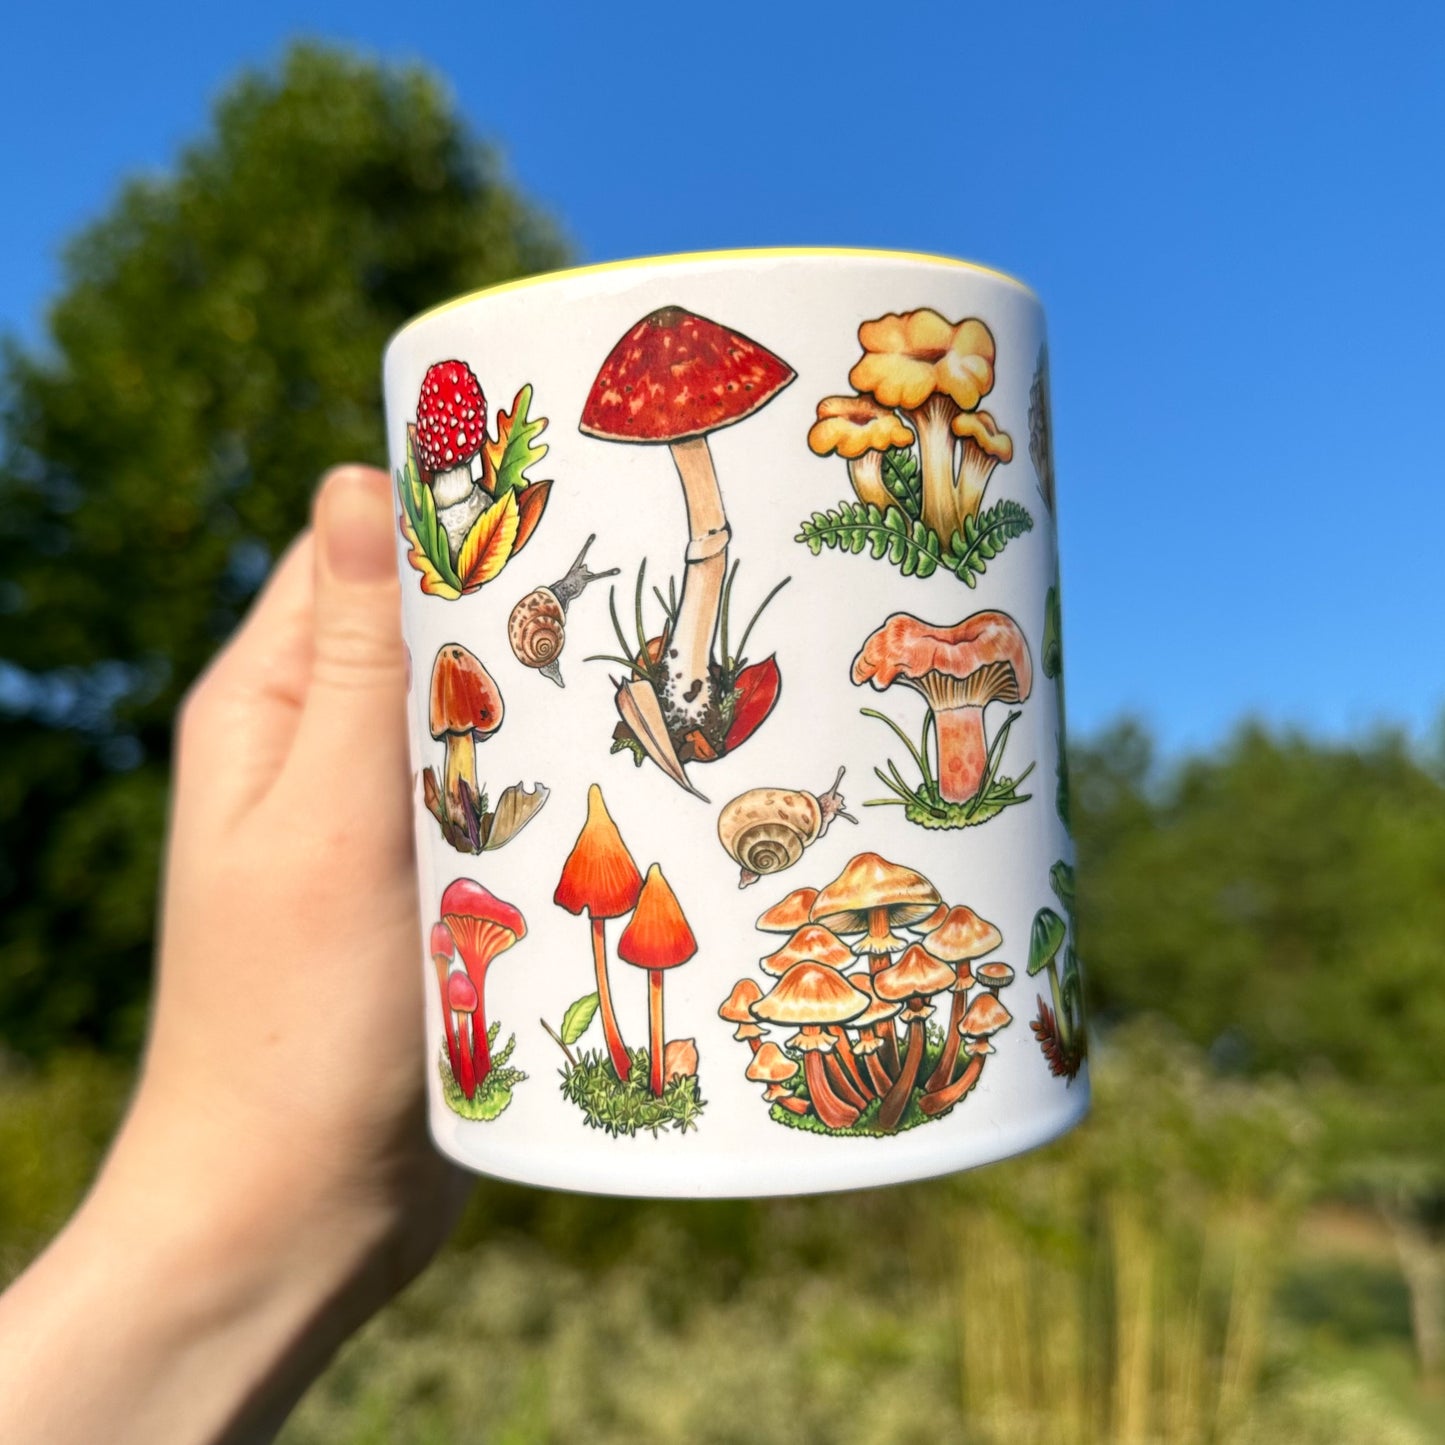 Rainbow Mushroom Mug